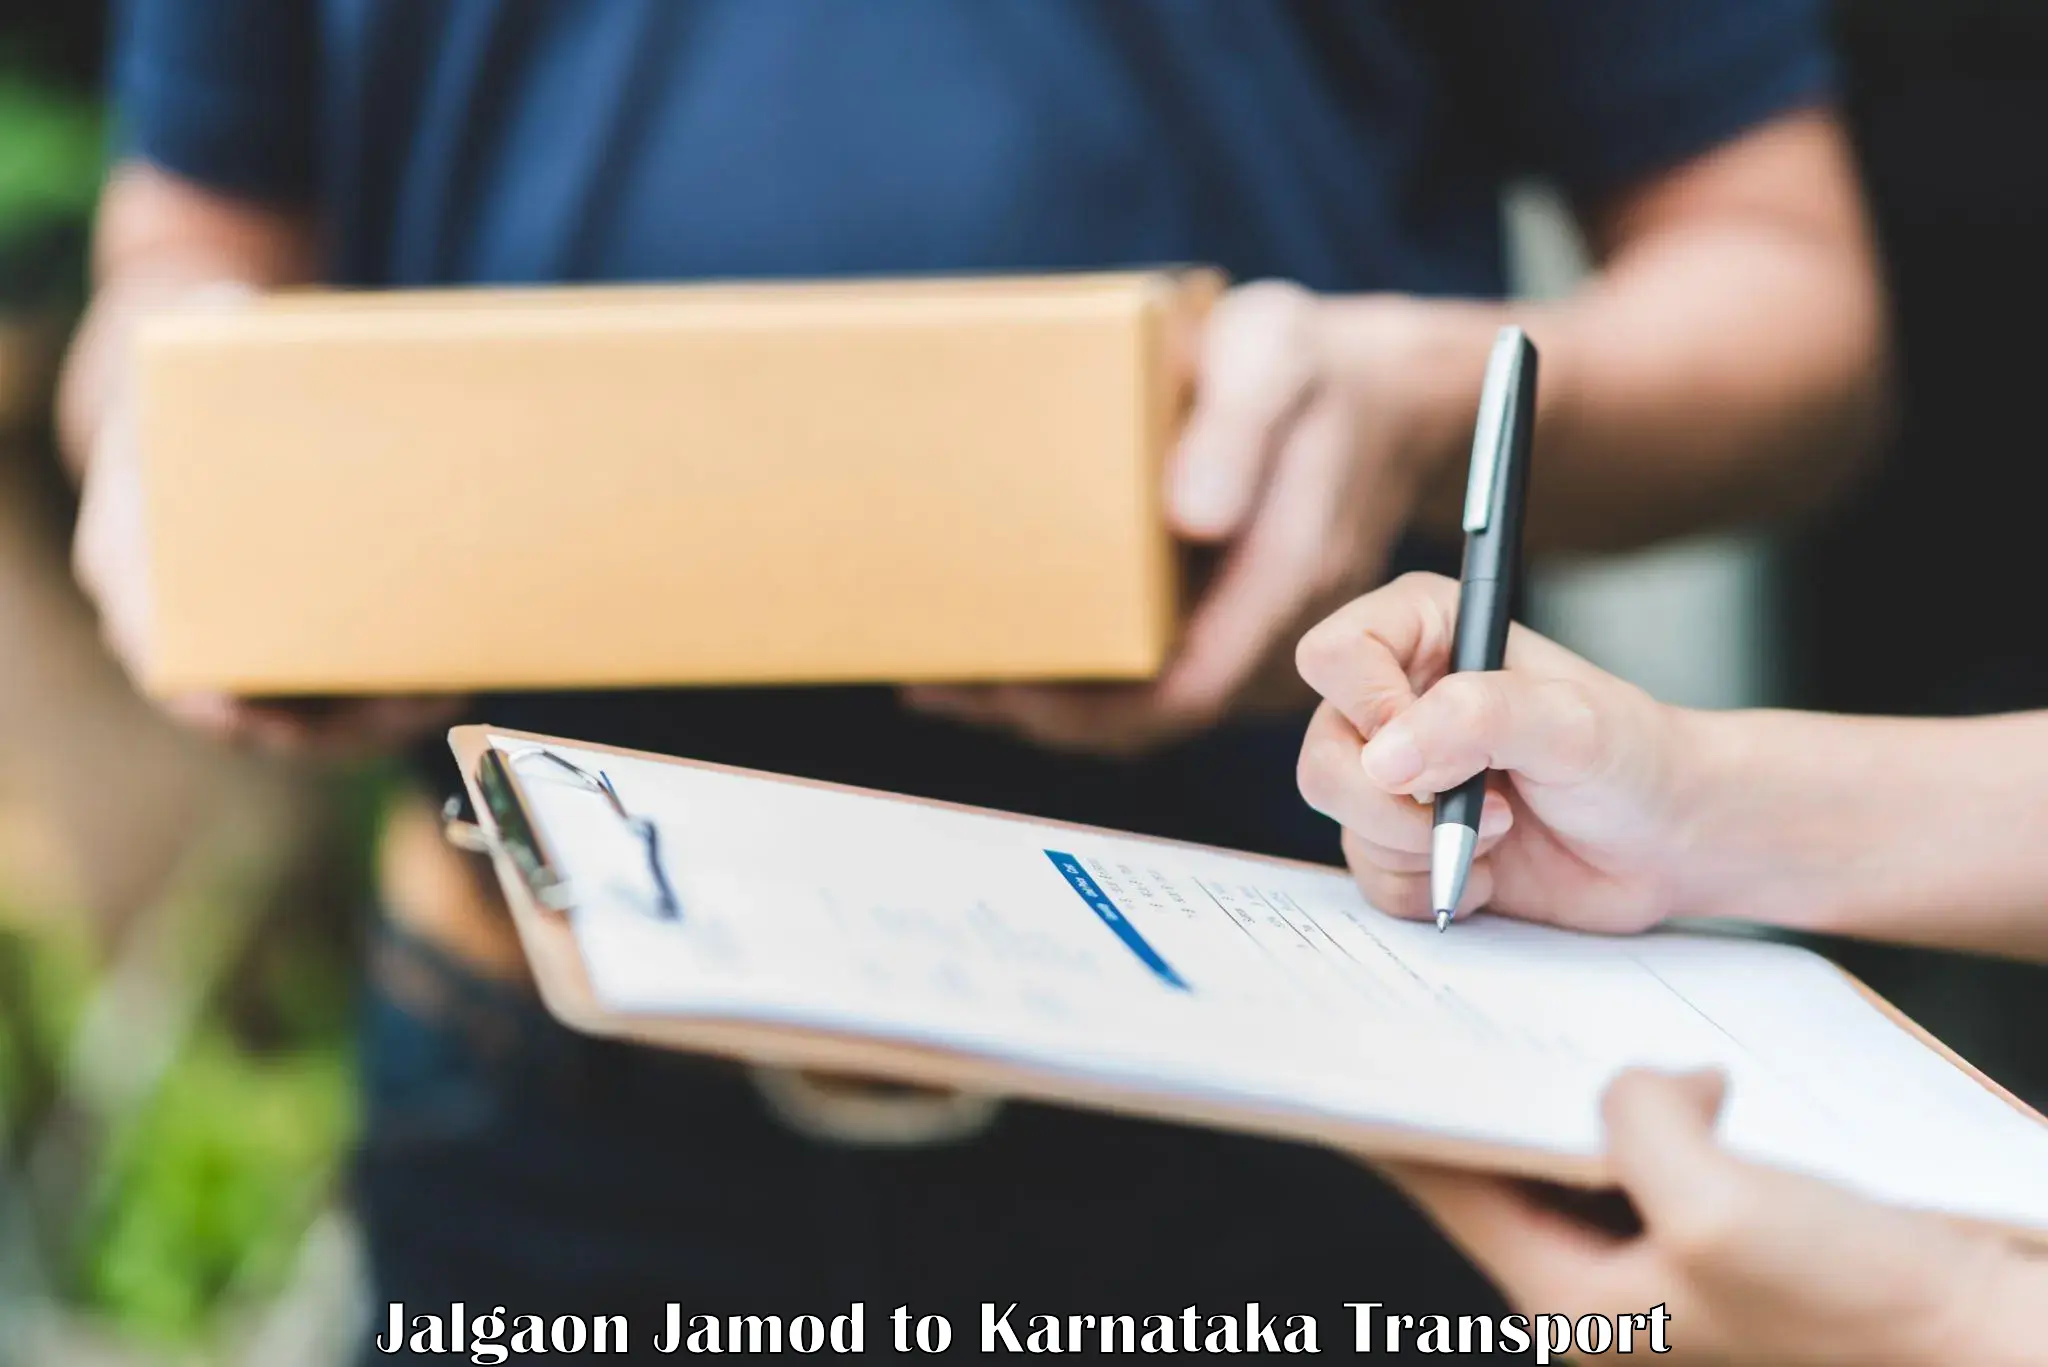 Transport shared services in Jalgaon Jamod to Nagamangala